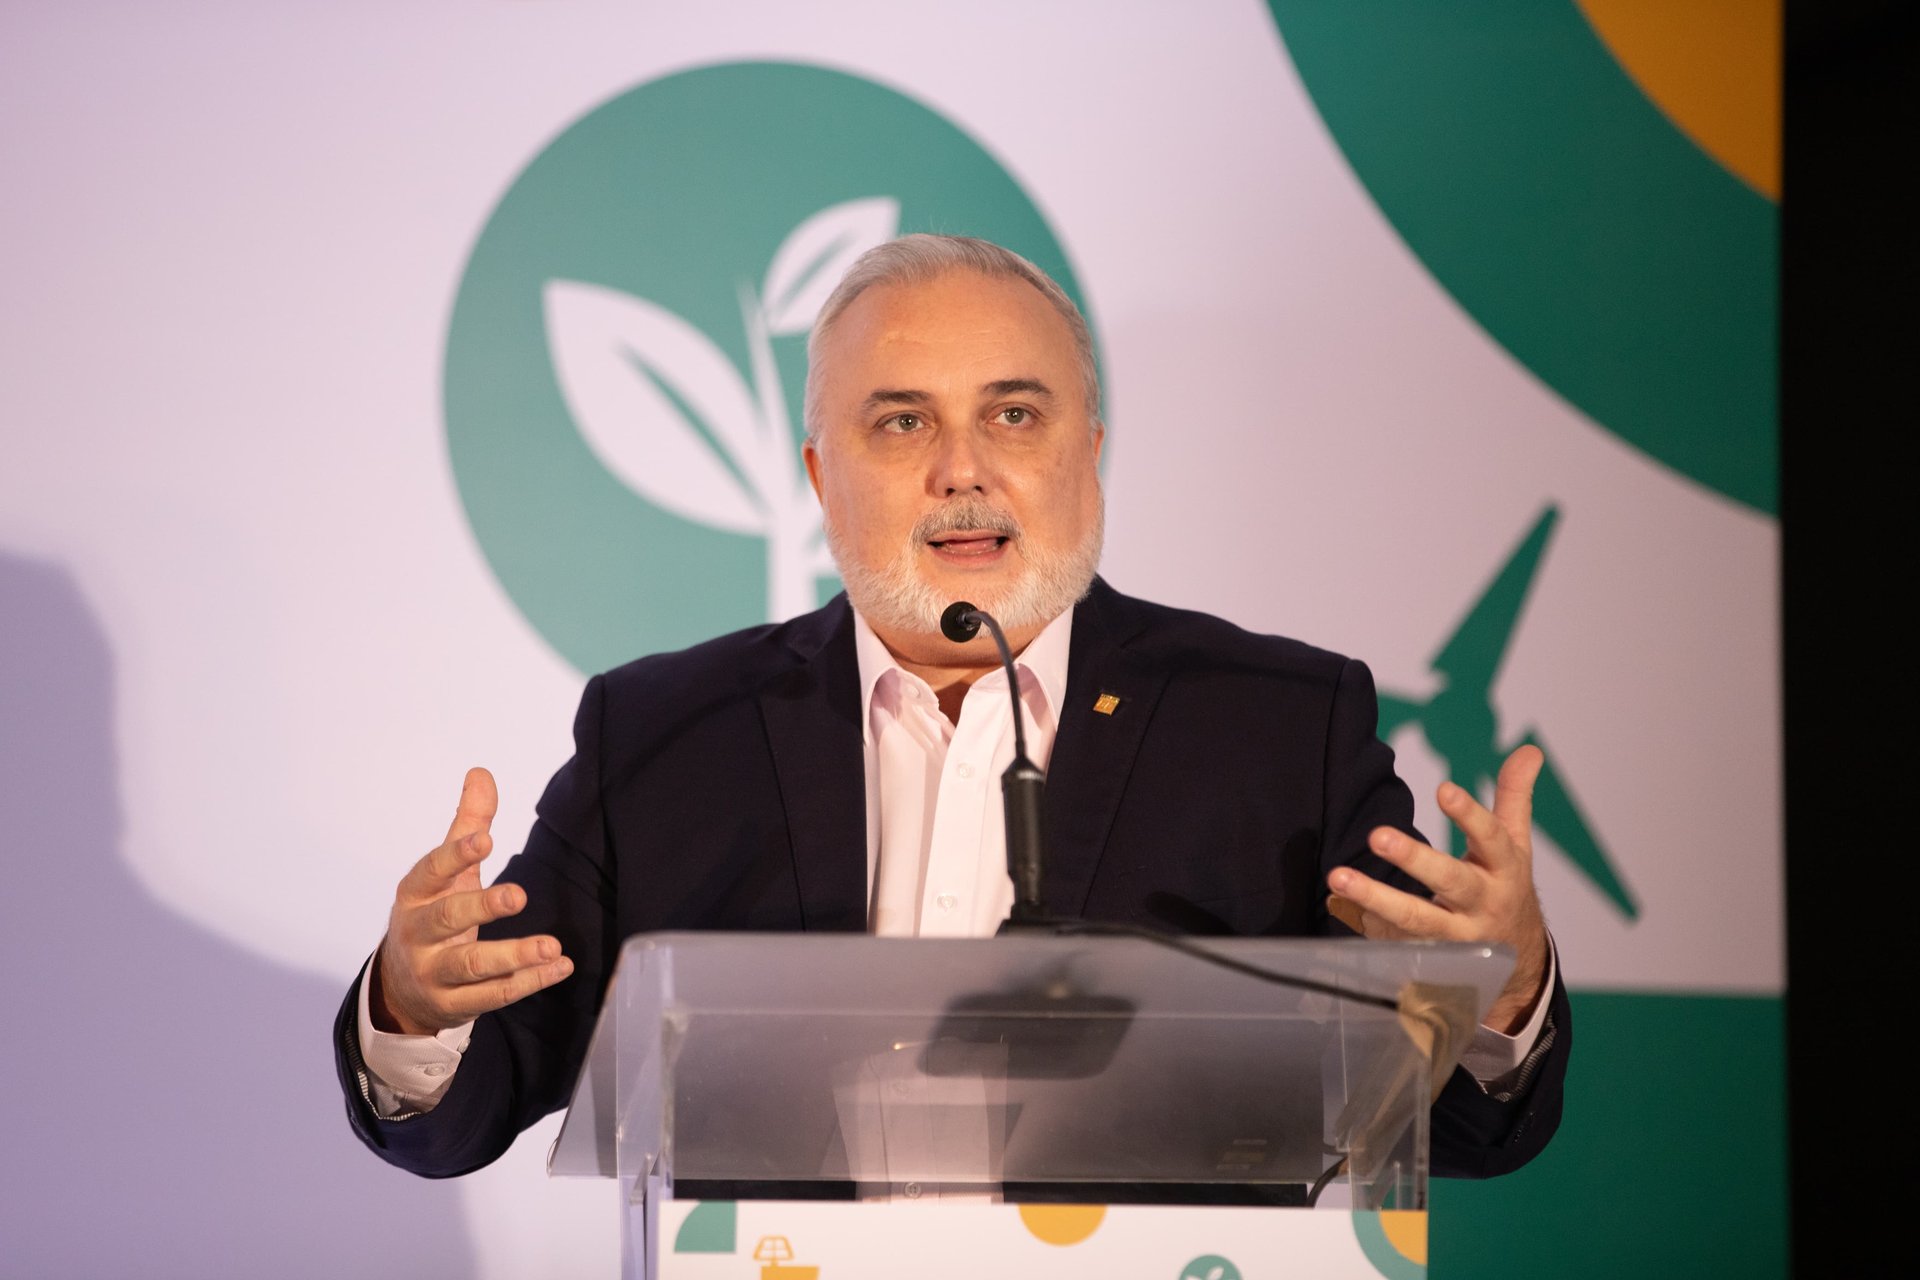 Presidente da Petrobras debate industrialização e transição energética em seminário no Rio de Janeiro